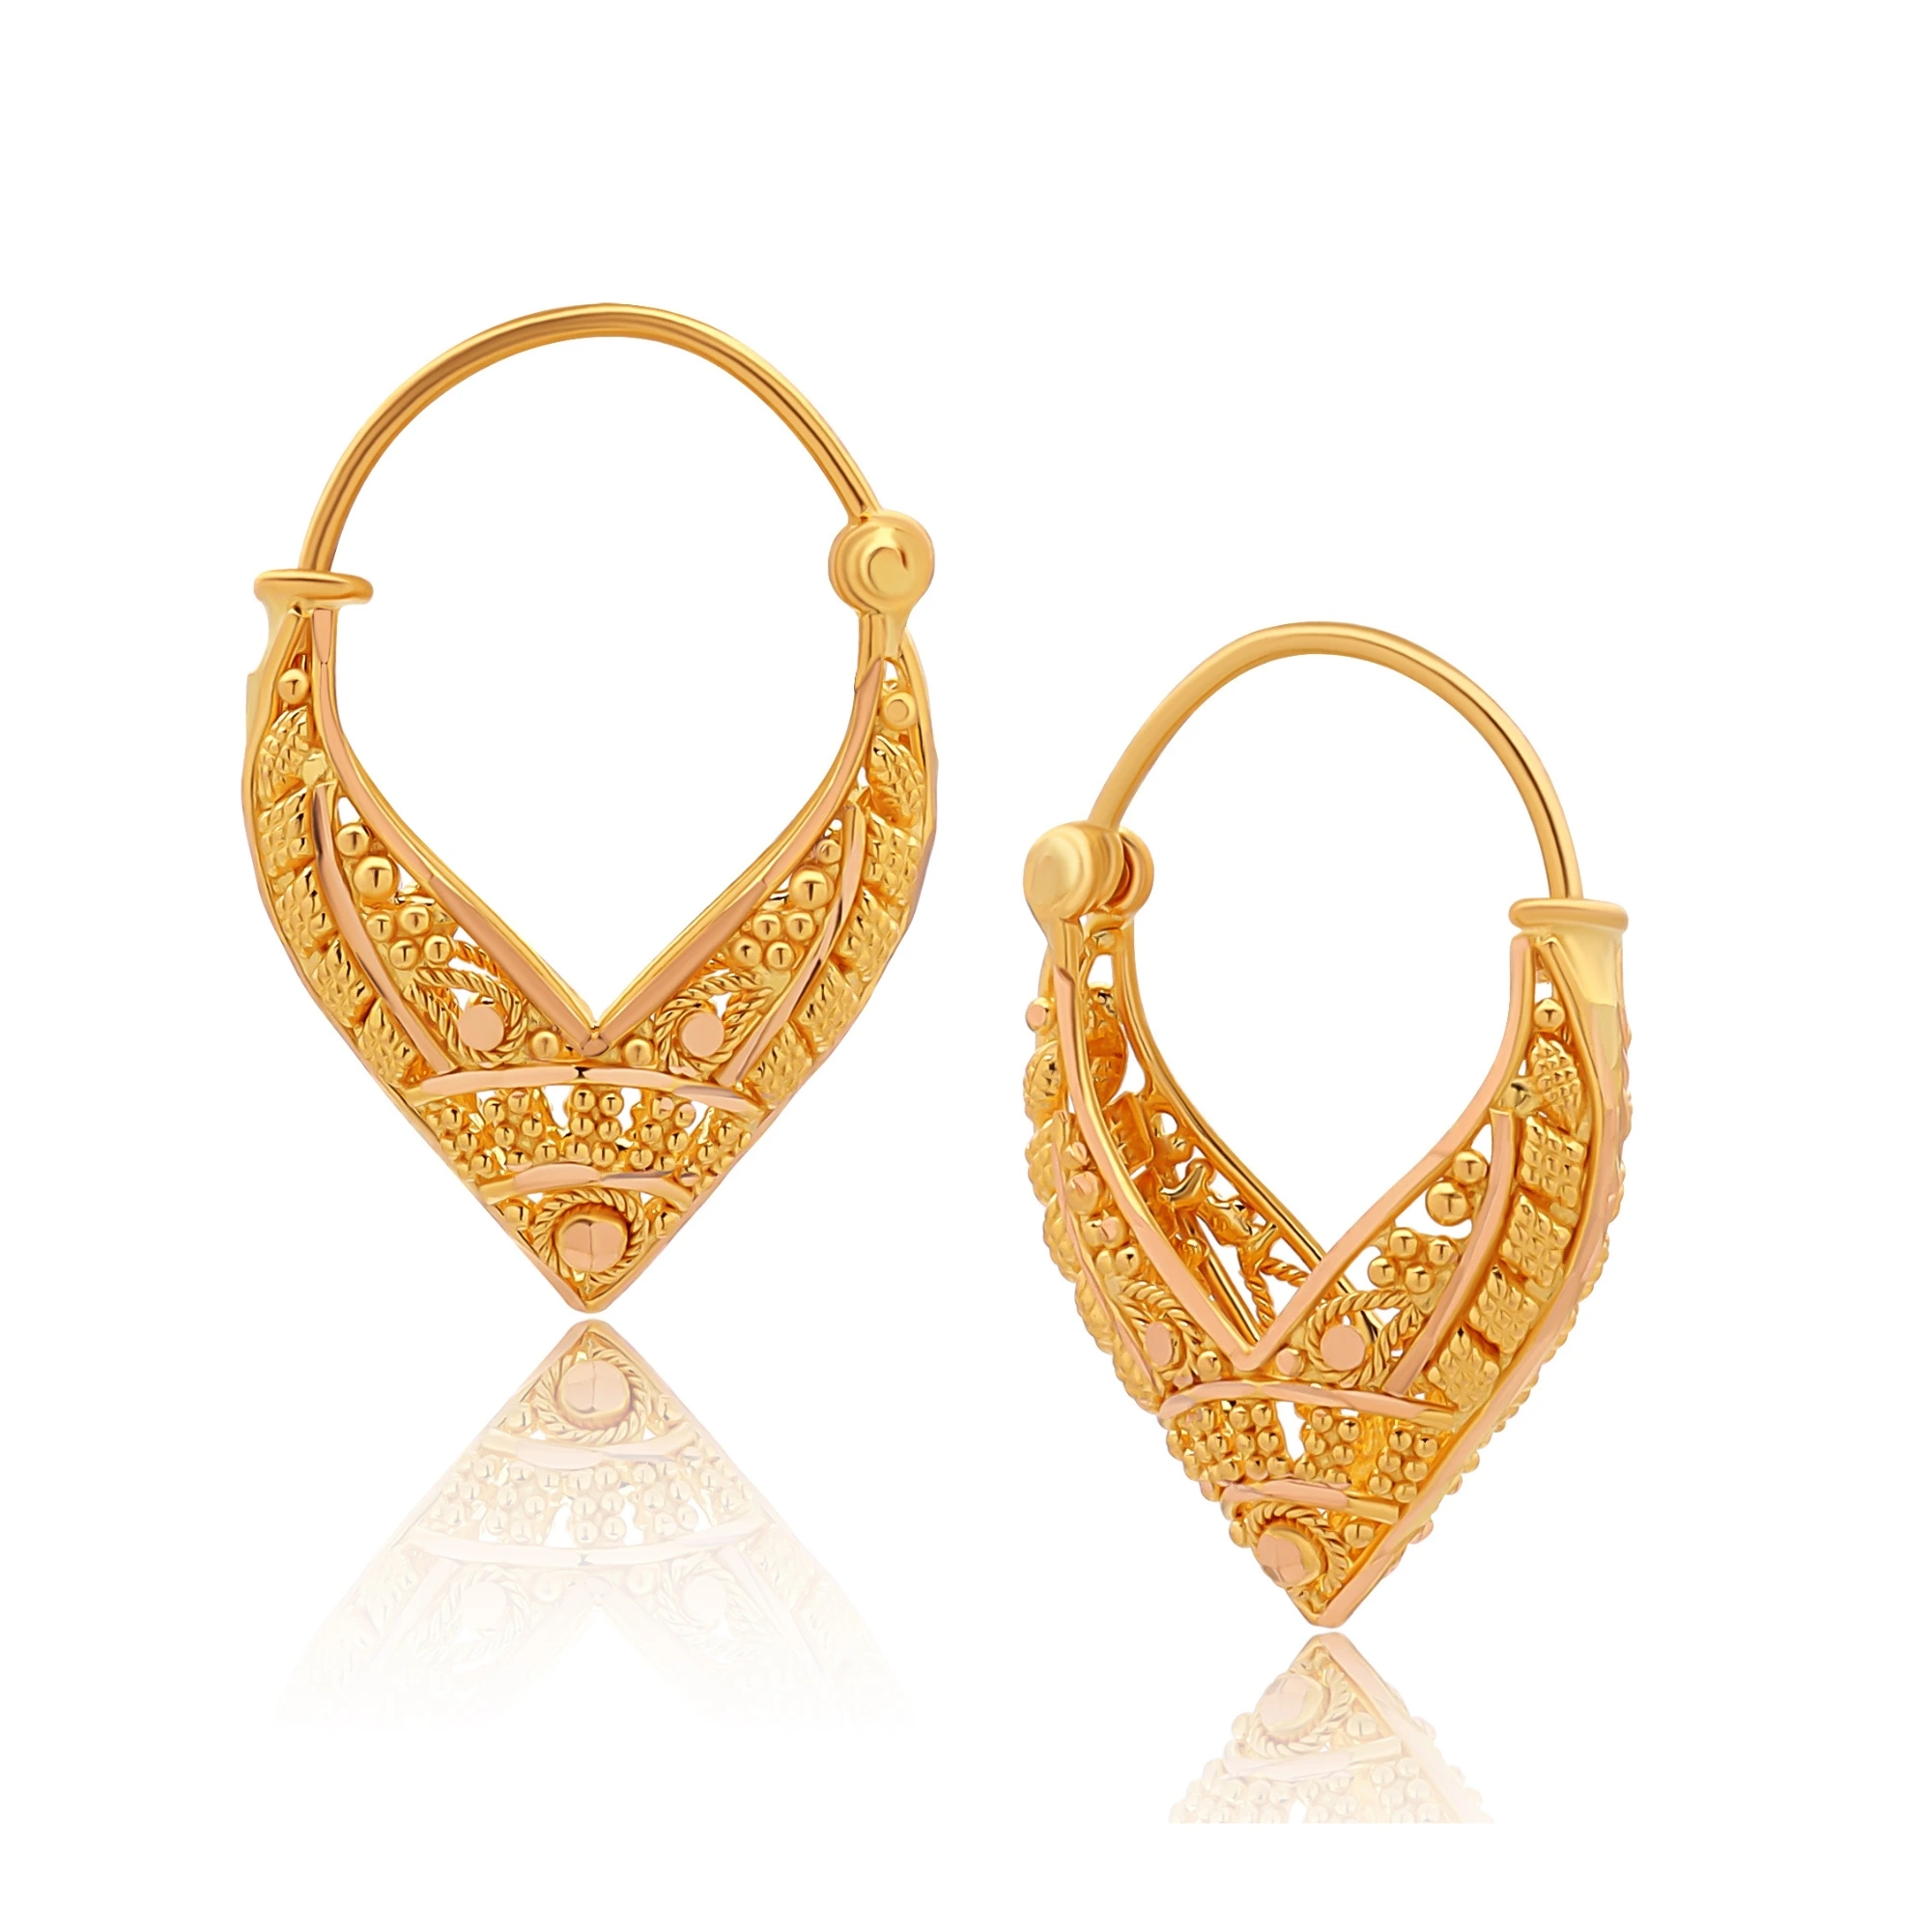 Gold Earrings For Women डेली यूज वाले ये गोल्ड इयररिंग आपको देंगे यूनिक और  मॉडर्न लुक यहां देखें लिस्ट - Gold Earrings For Women: डेली यूज वाले ये  गोल्ड इयररिंग ...